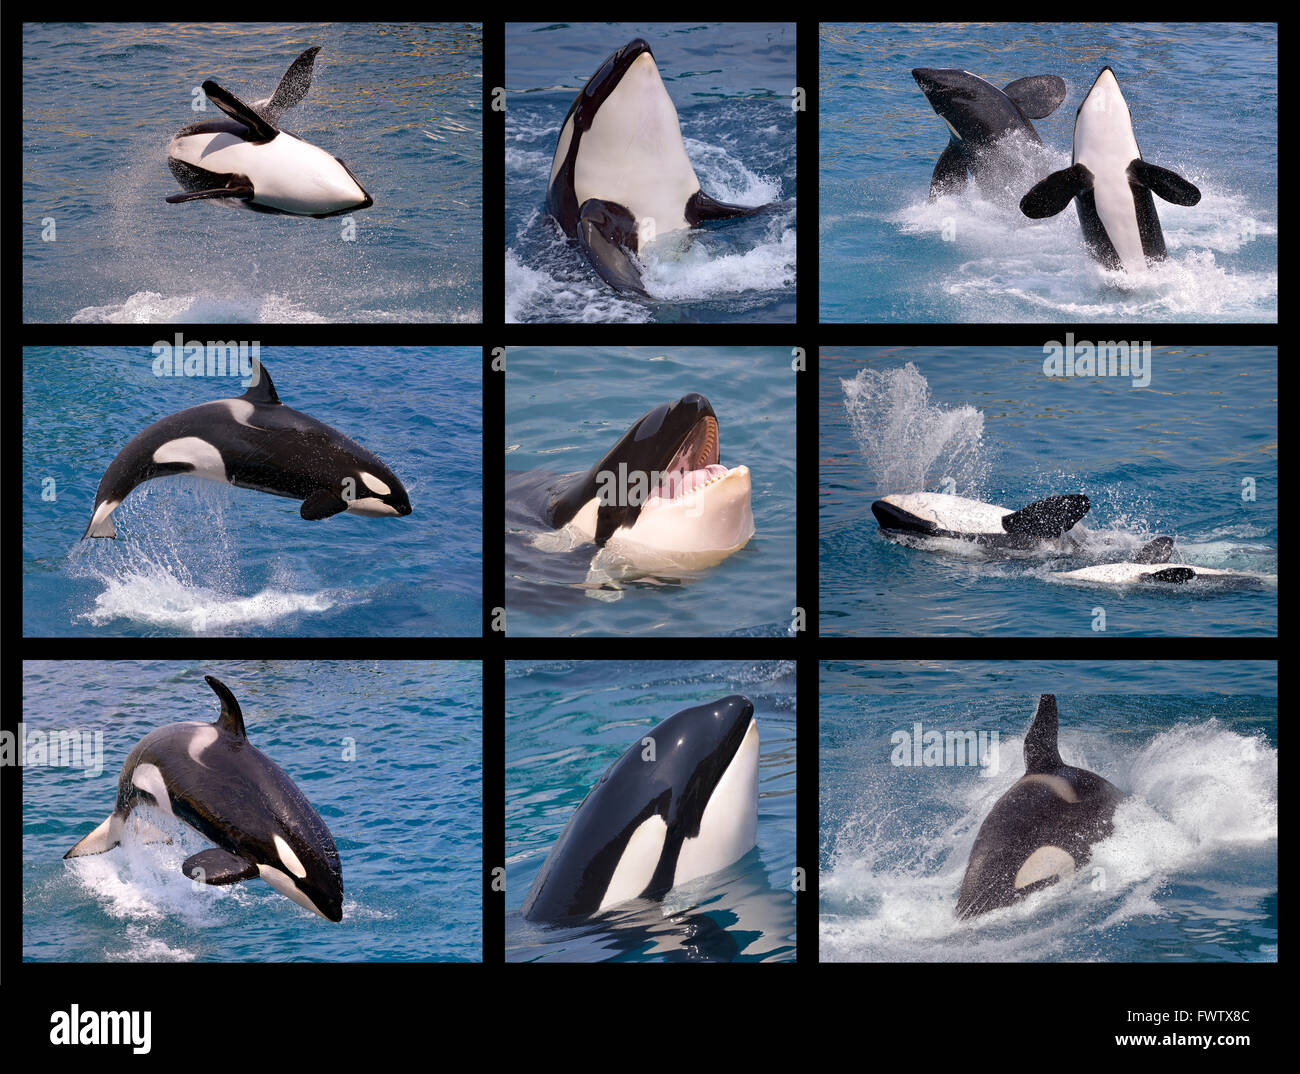 Neuf photos de la mosaïque des épaulards (Orcinus orca) Banque D'Images